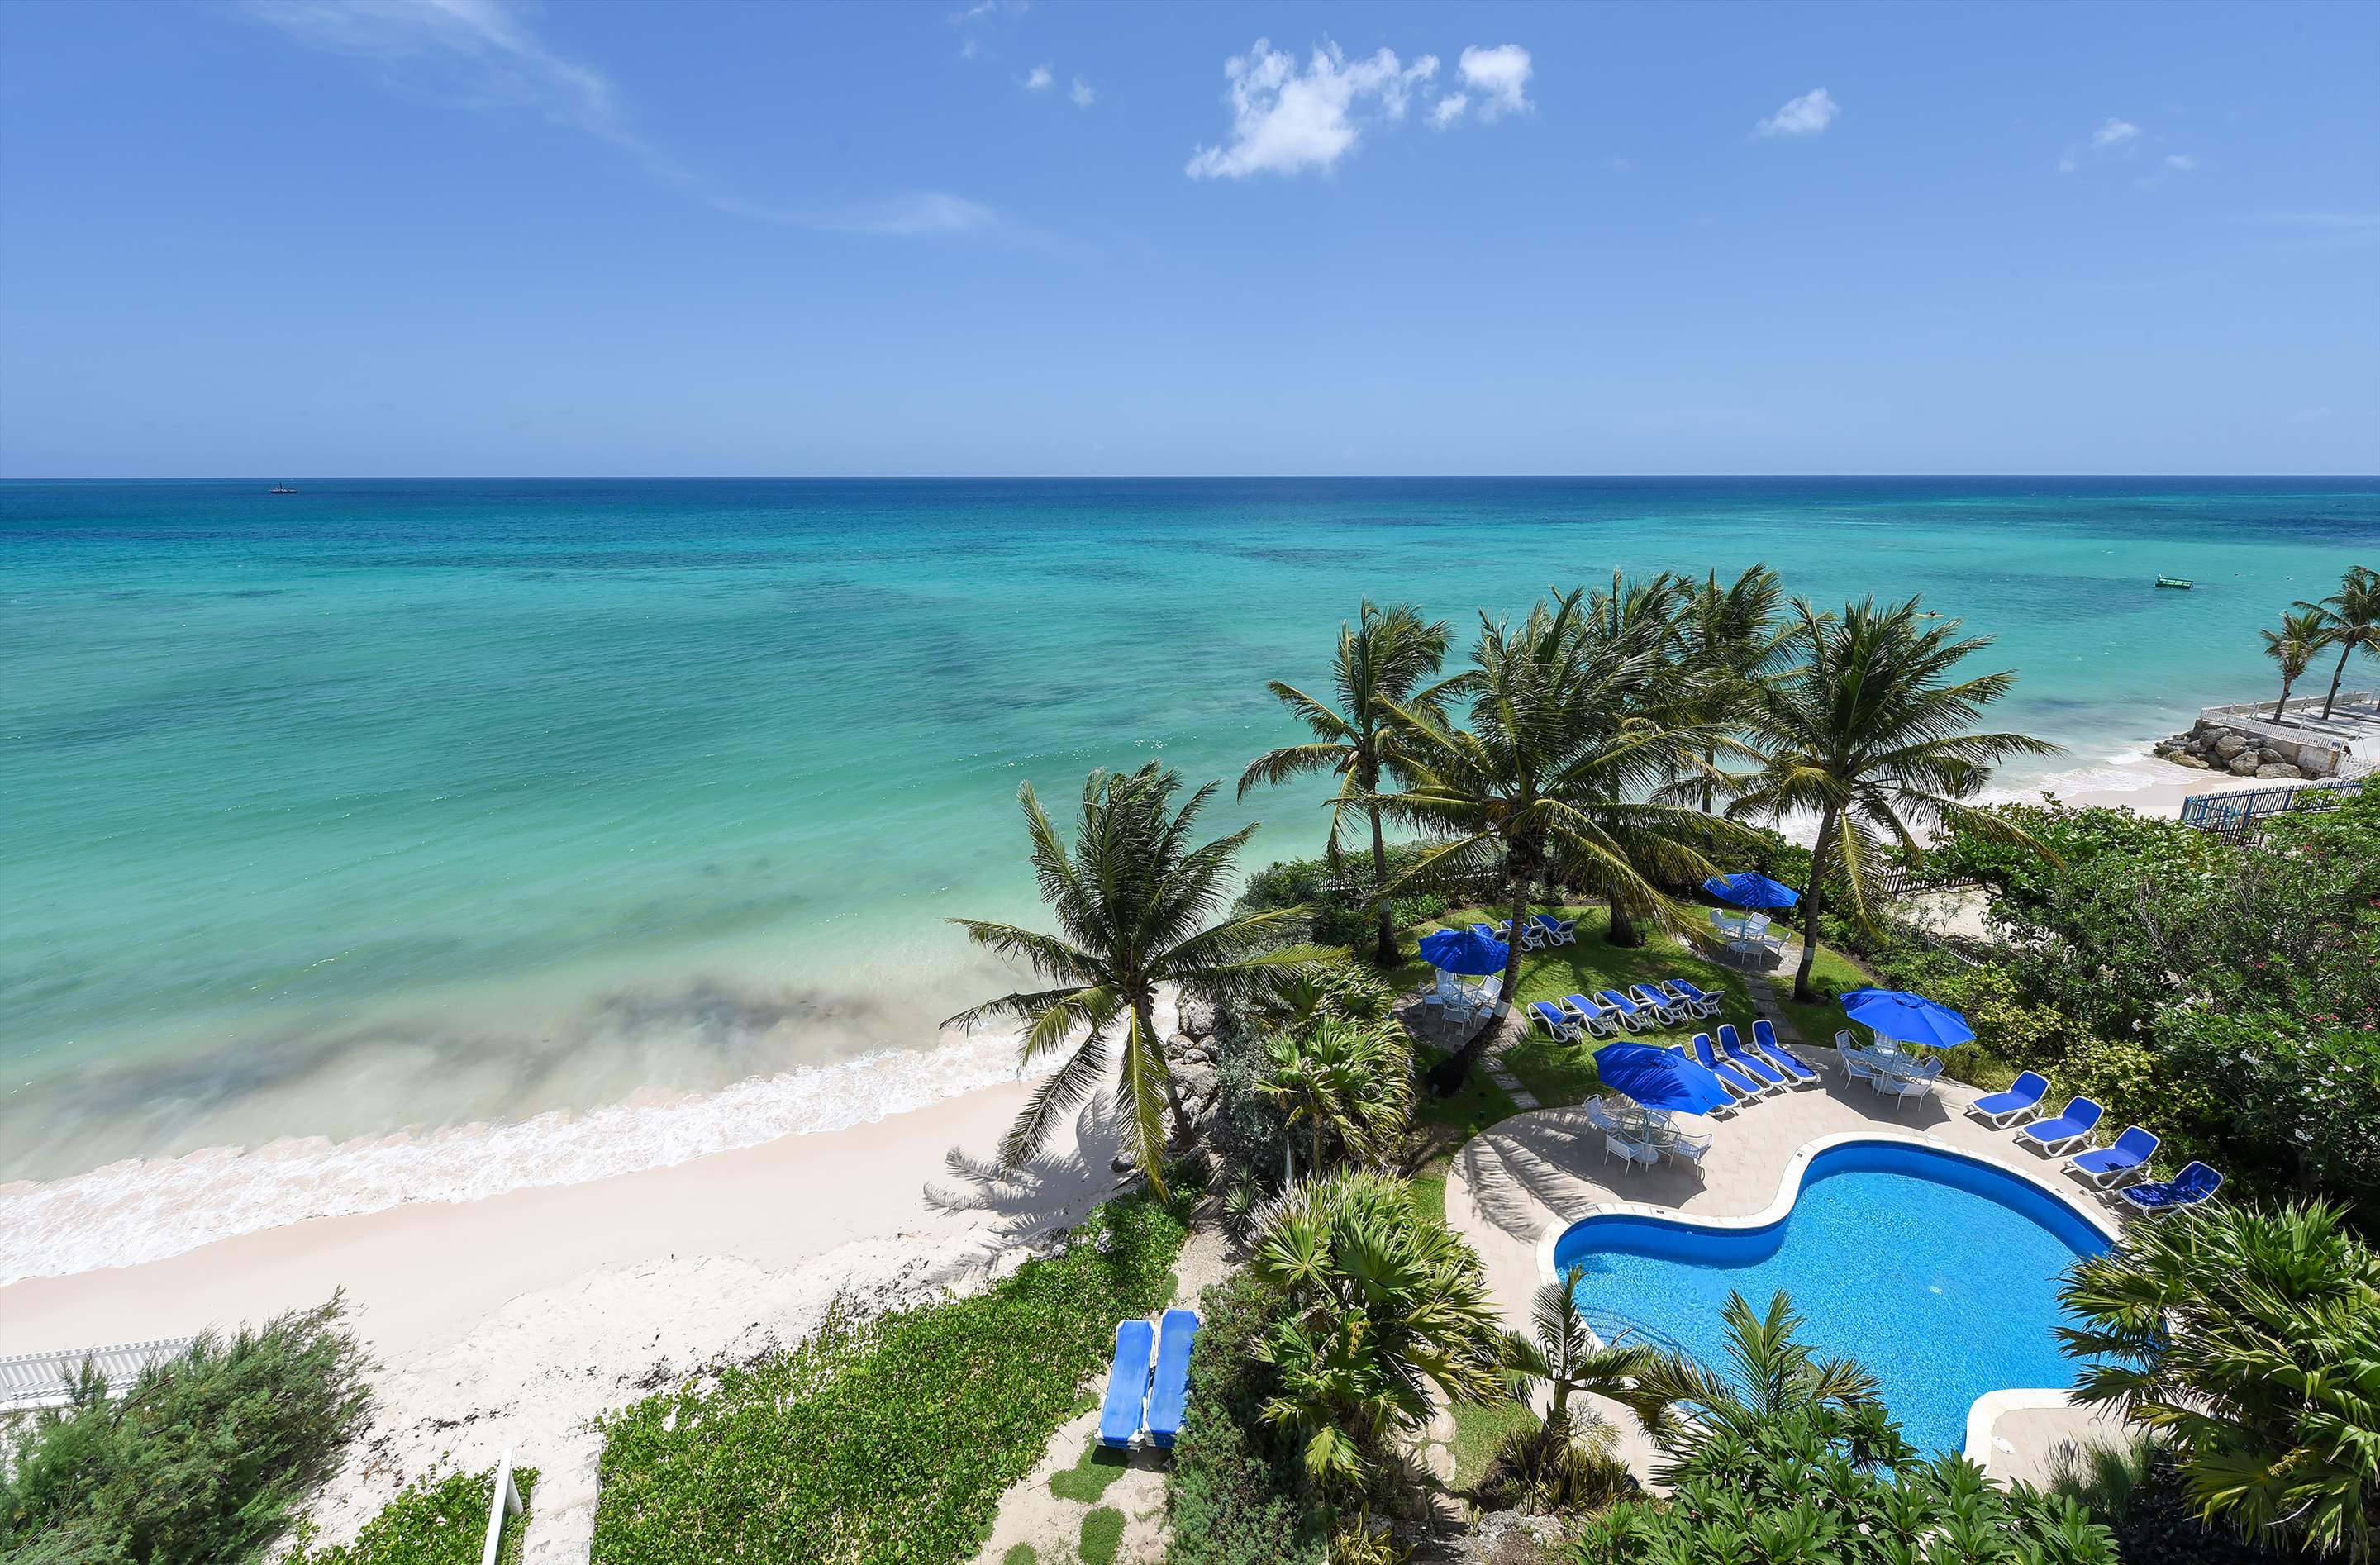 Maxwell Beach Villas 503, 2 bedroom, 2 bedroom villa in St. Lawrence Gap & South Coast, Barbados Photo #9